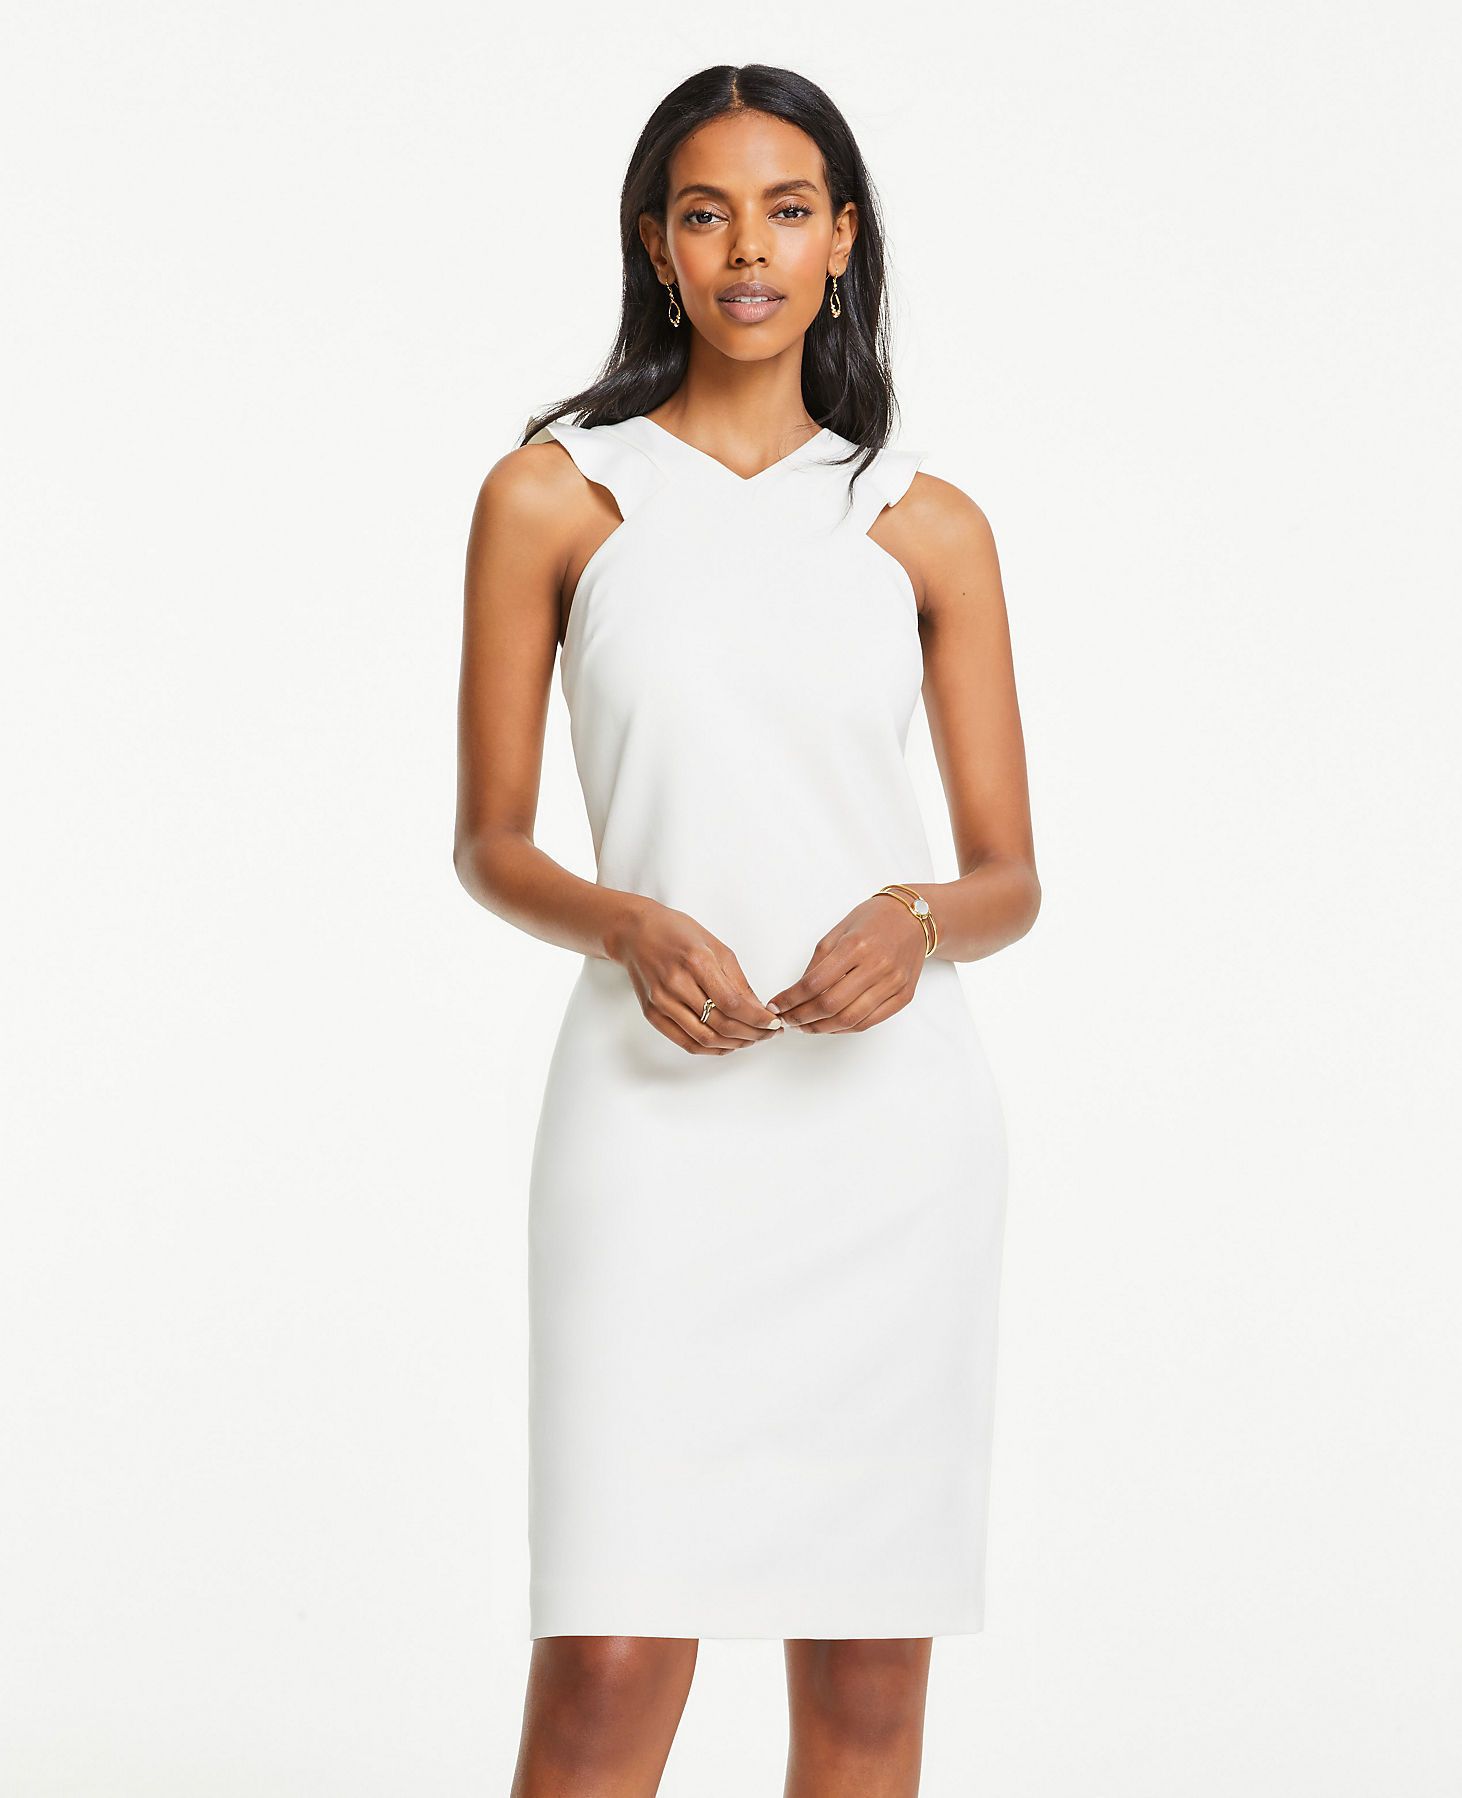 knee-length white dress on model